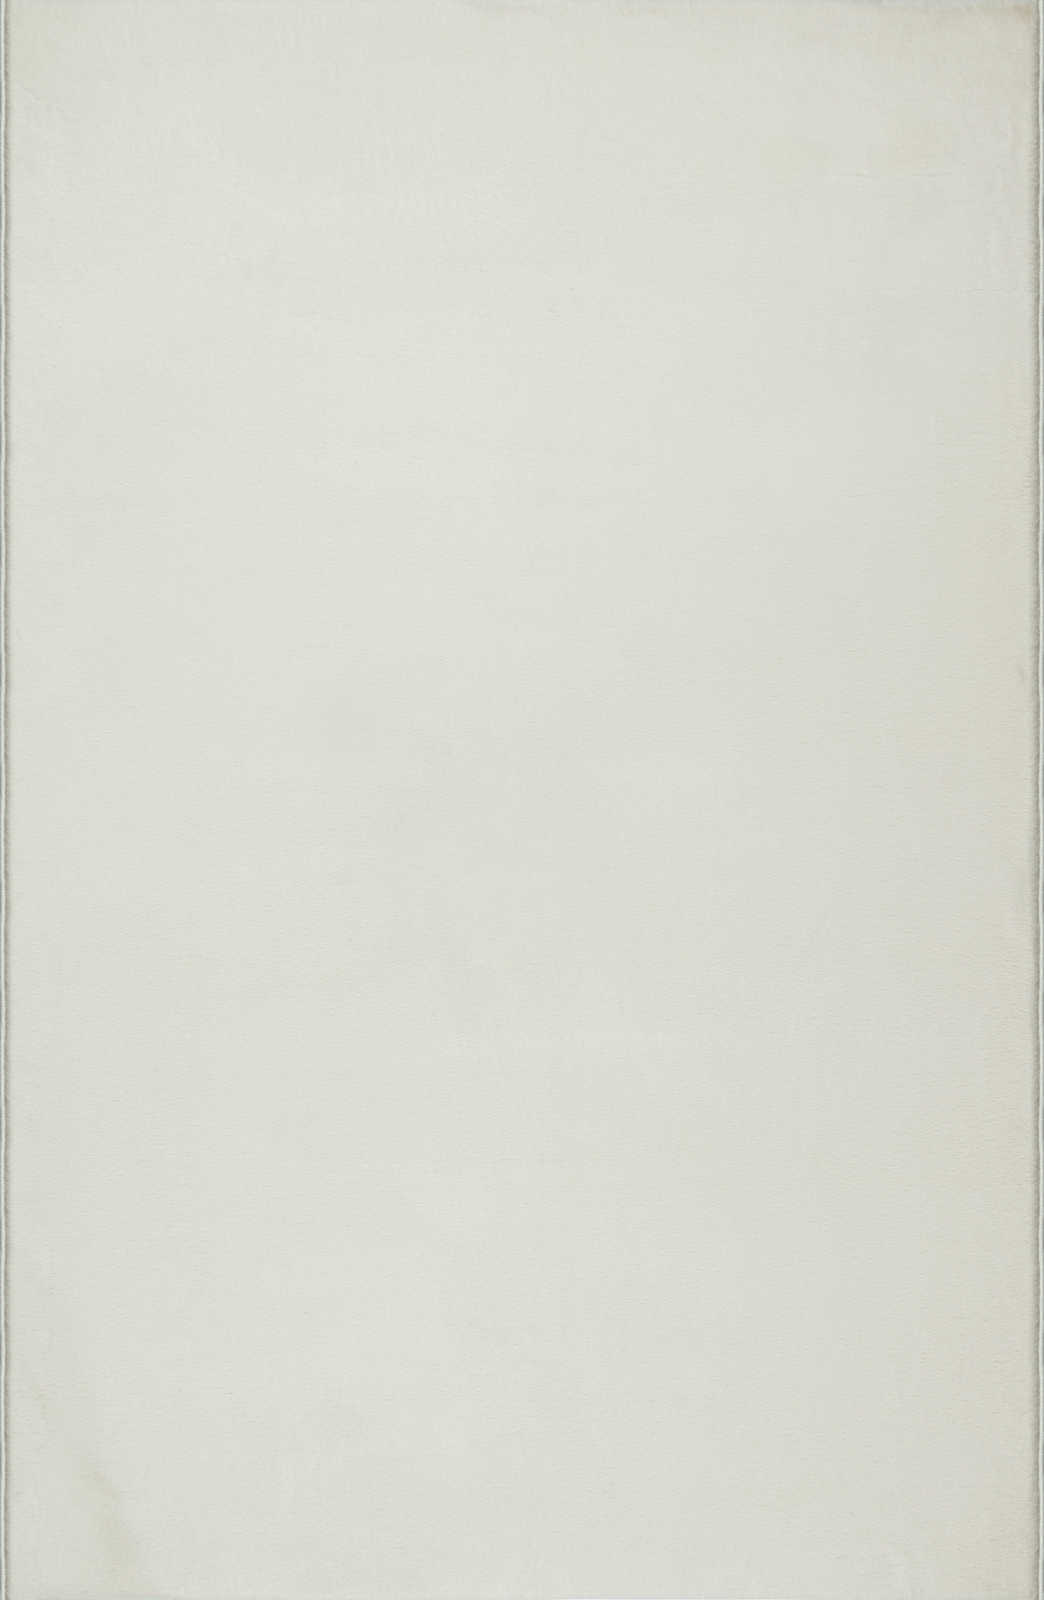             Sanfter Hochflor Teppich in Creme – 340 x 240 cm
        